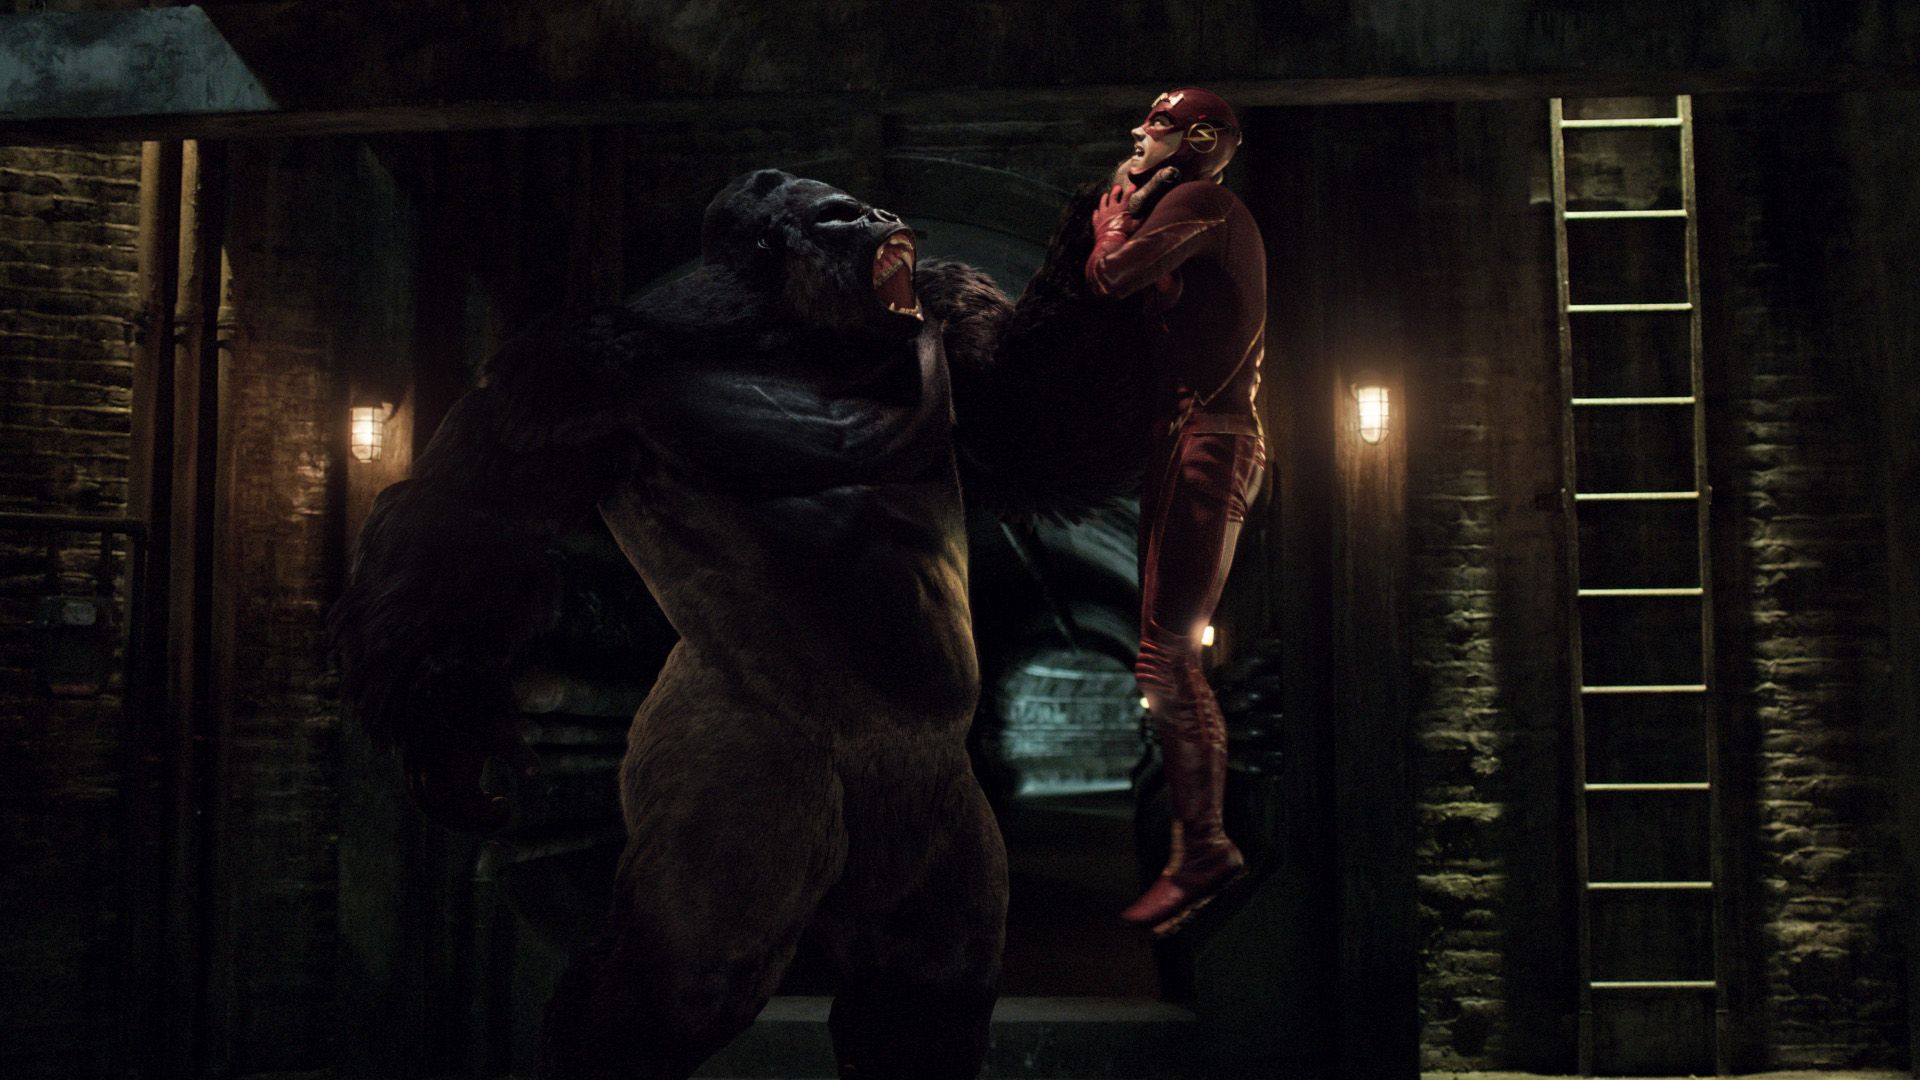 Gorilla Grodd versus The Flash